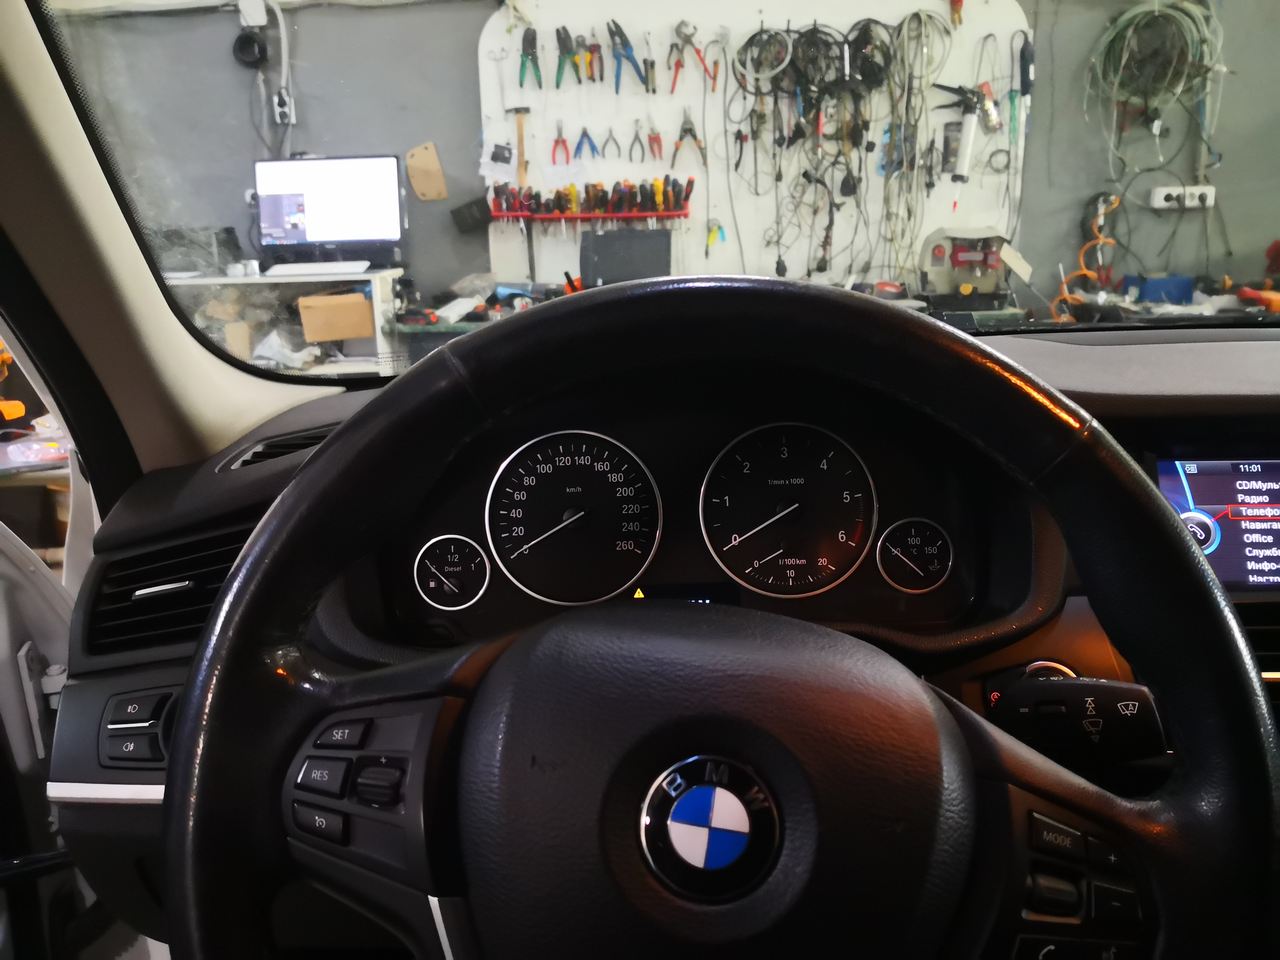 BMW X3 F25 20d 2015 г.в., стоковая панель приборов